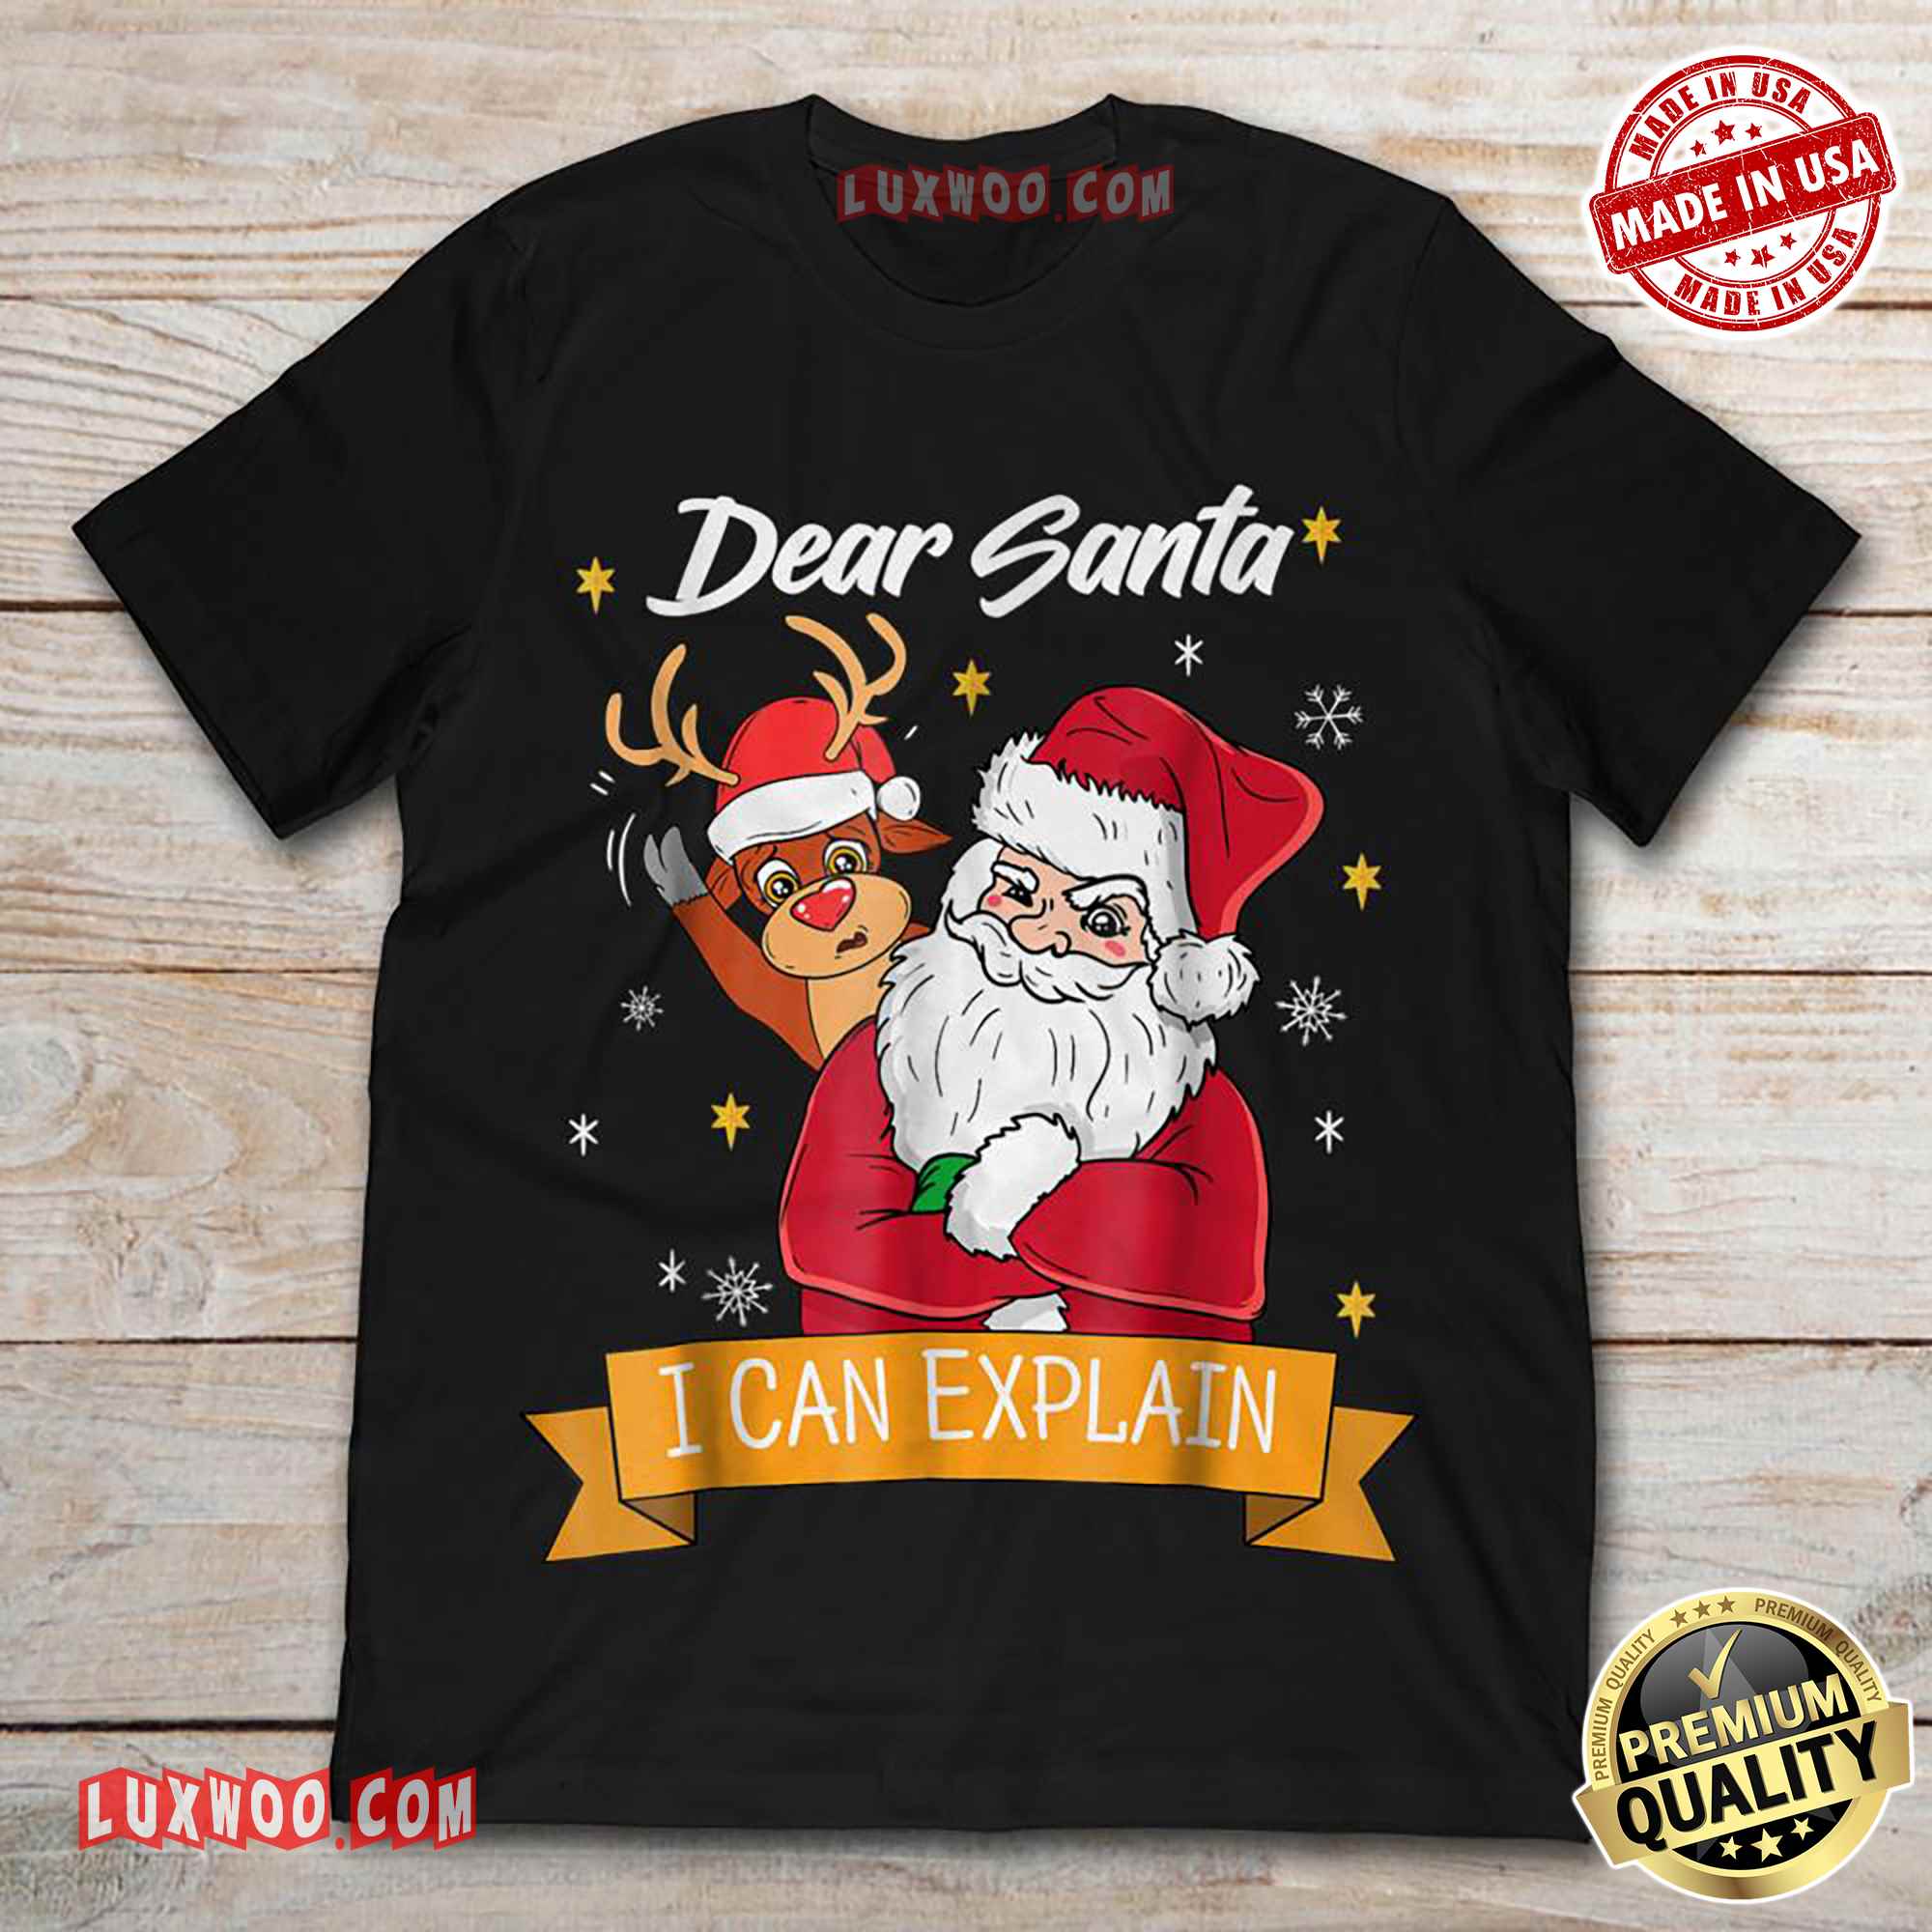 Dear Santa I Can Explain Tee Shirt